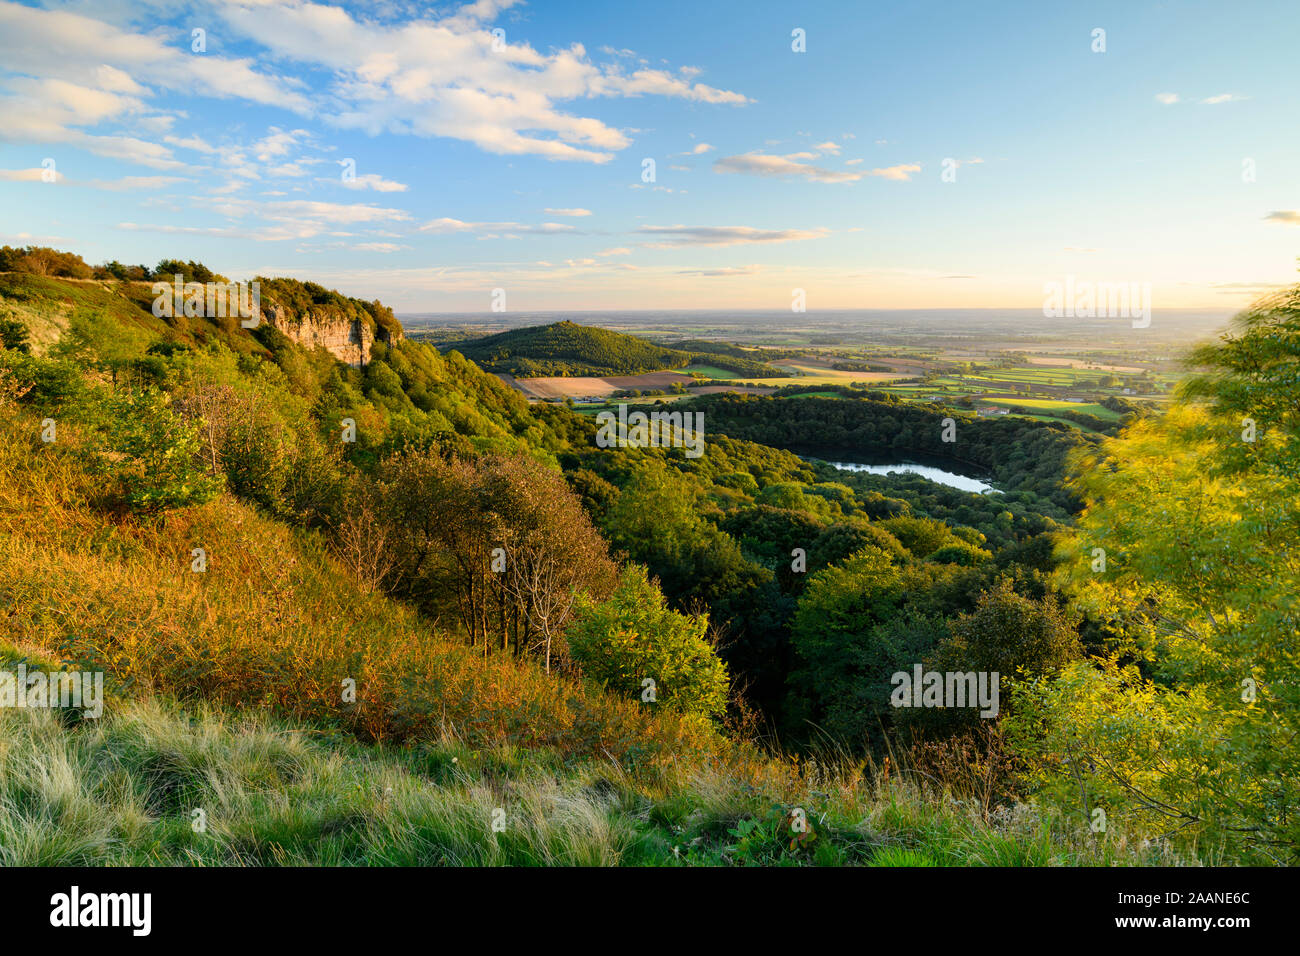 Landschaftlich schöne lange - Abstand (See Gormire, Haube Hill, Whitestone Felsen, Landschaft & blauer Himmel) - Sutton Bank, North Yorkshire, England, UK. Stockfoto